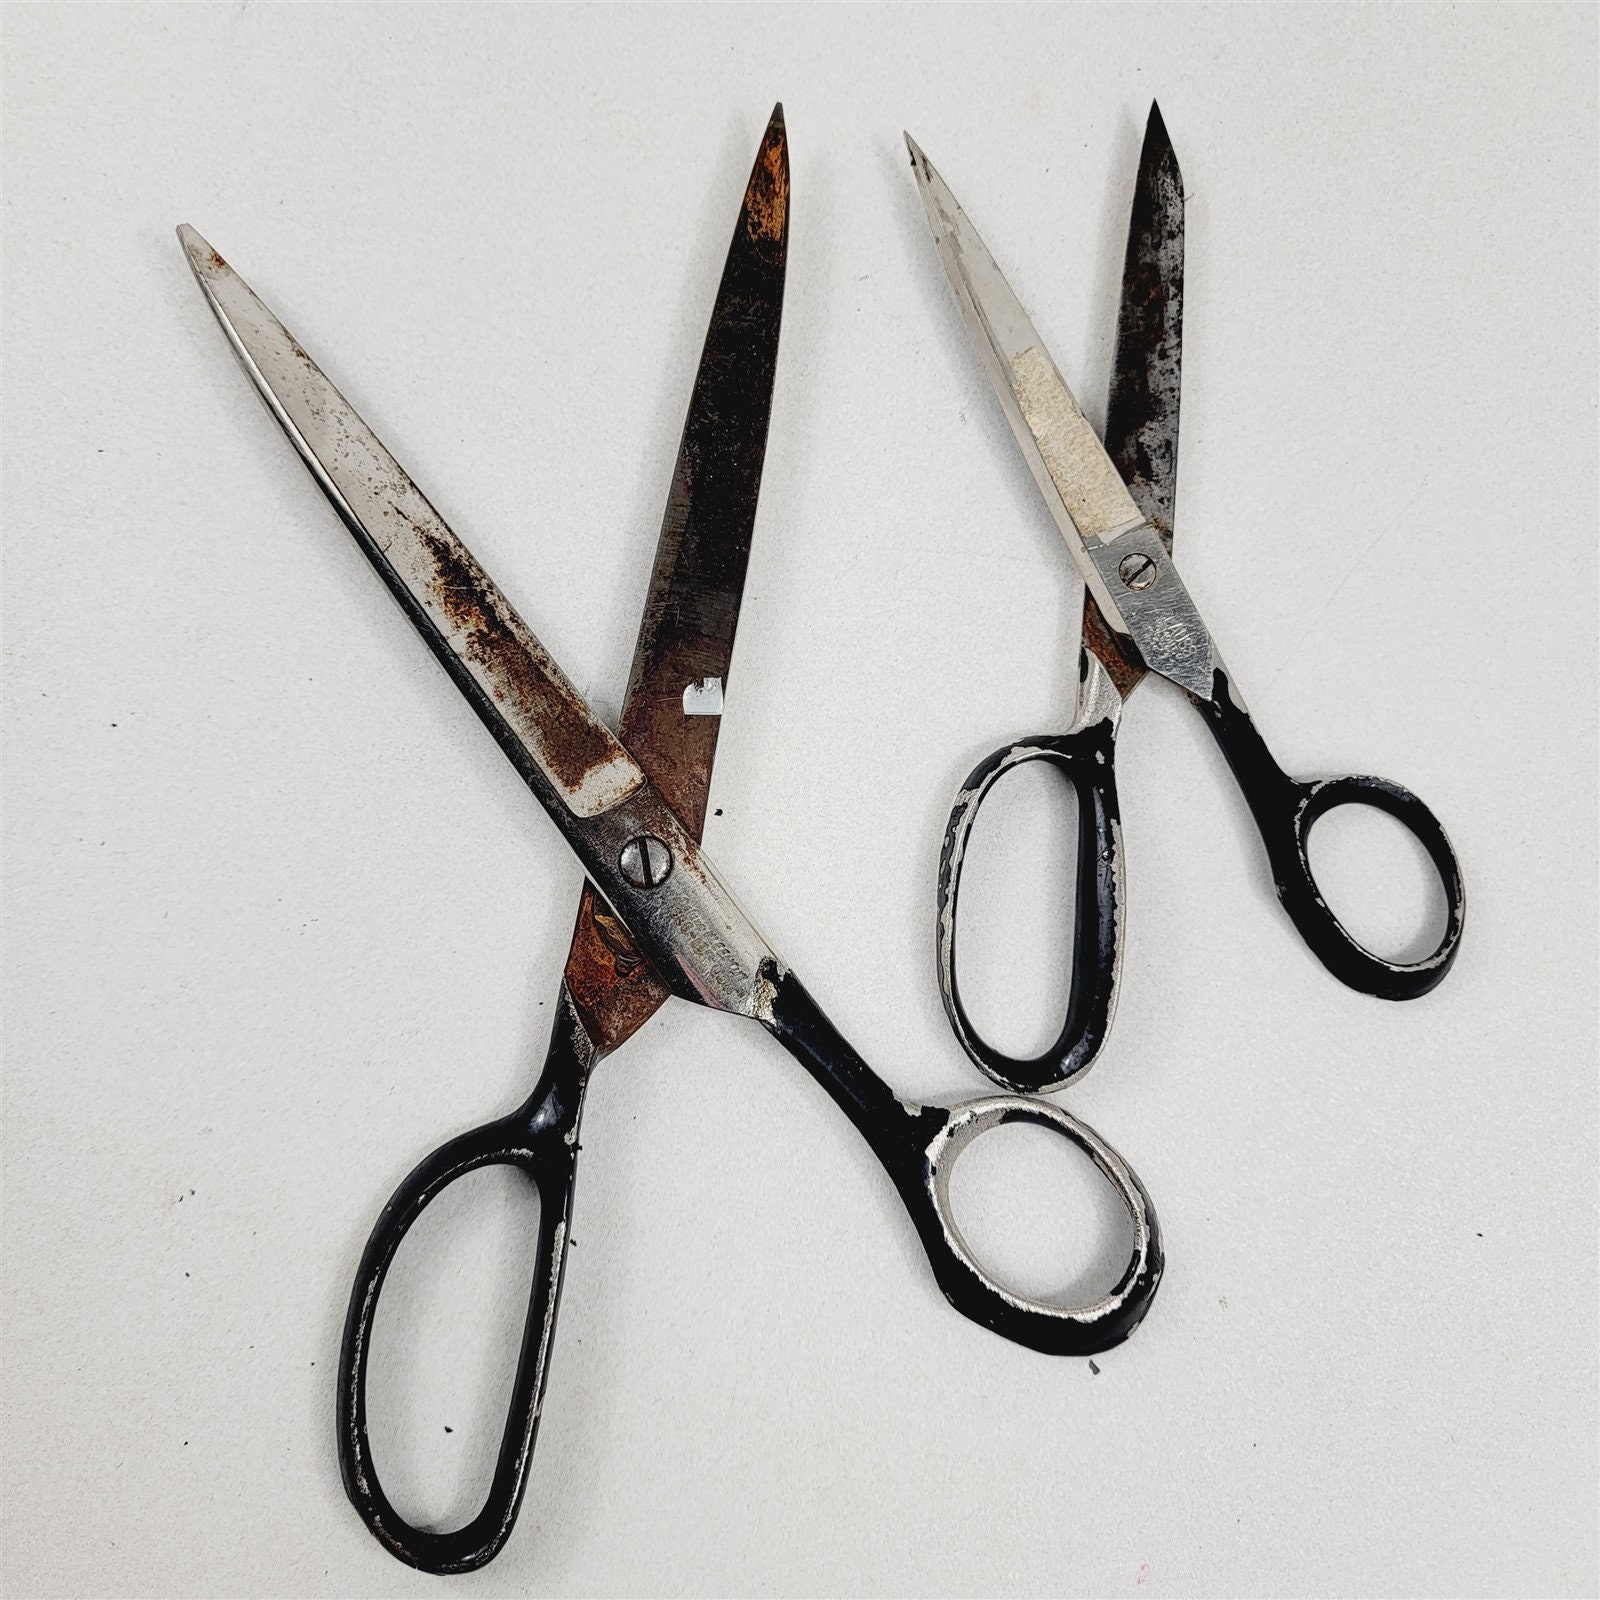 8 Vintage Scissors Shears Lot Kleencut Kingslead Boye Clauss